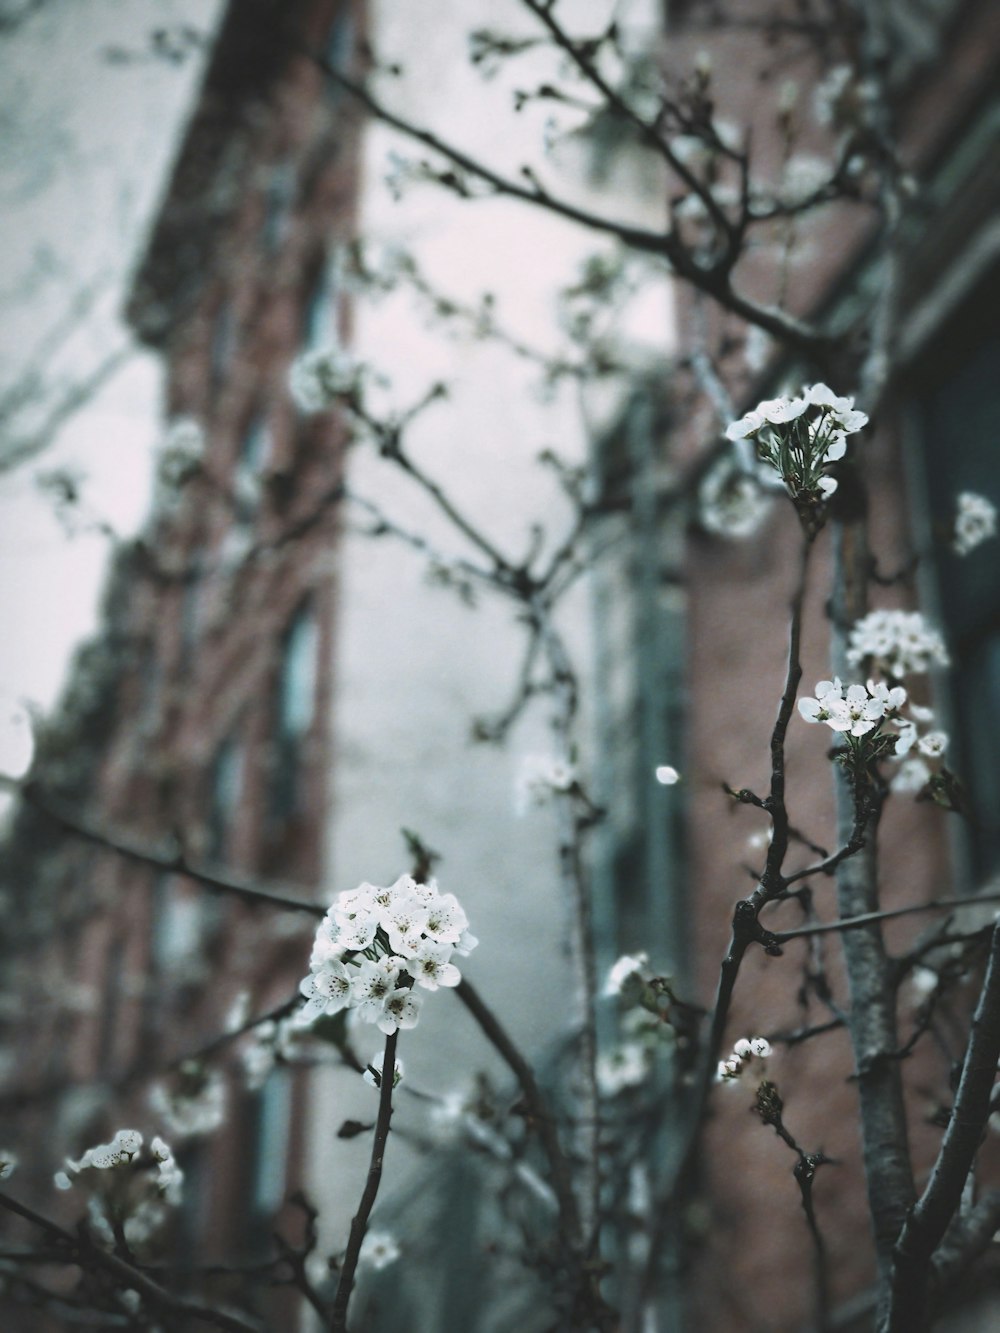 Nahaufnahme von weißen Blütenblättern in der Nähe eines braunen Gebäudes